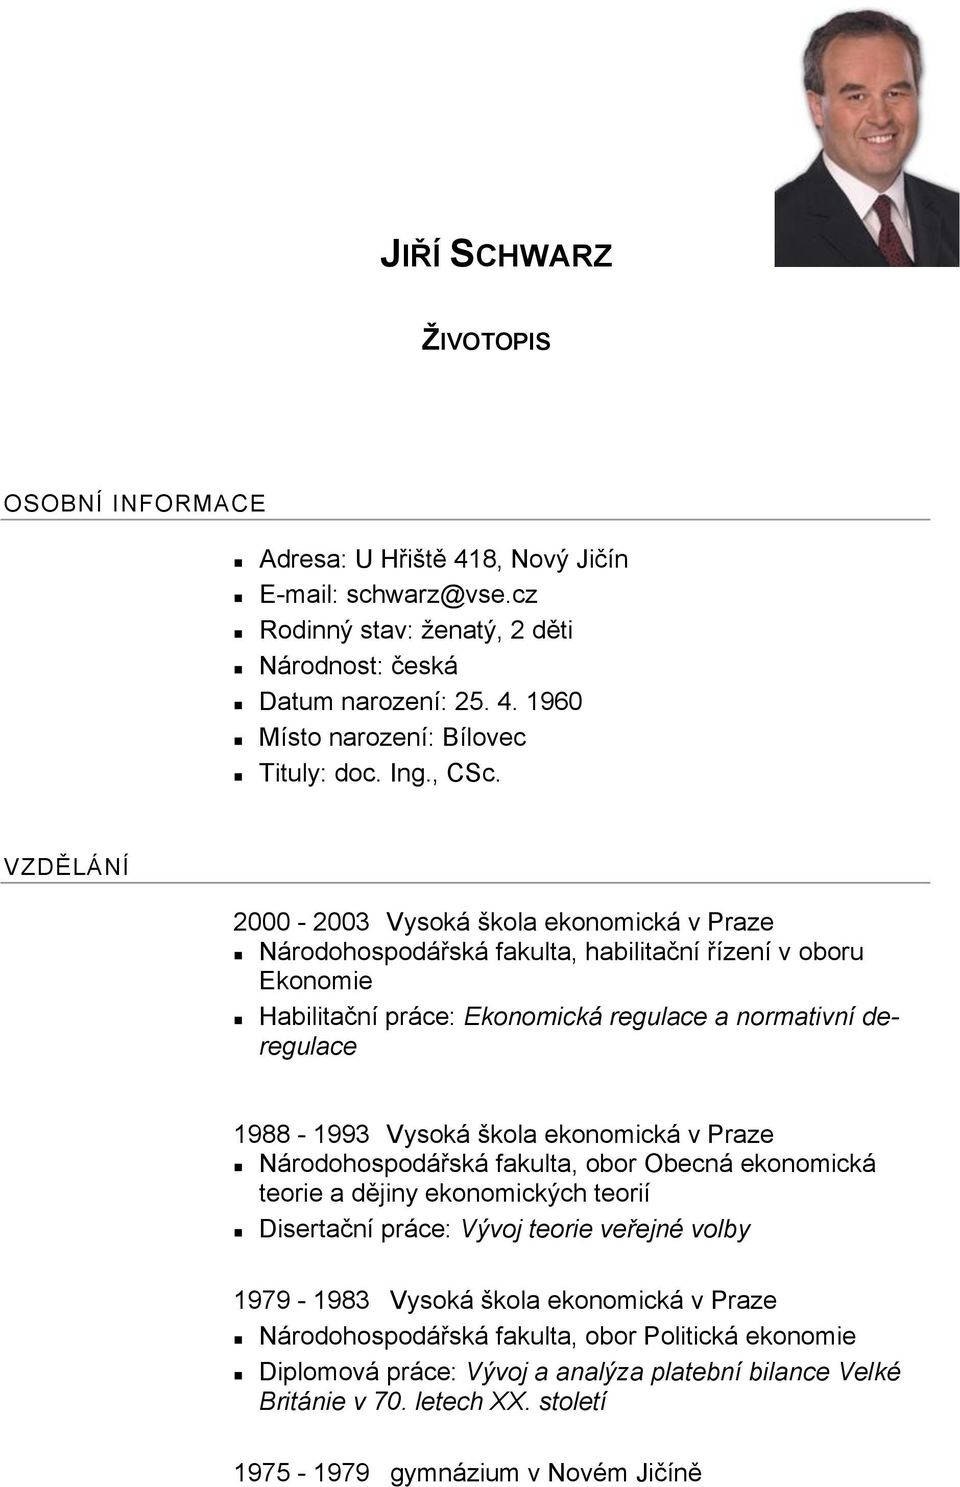 VZDĚLÁNÍ 2000-2003 Vysoká škola ekonomická v Praze Národohospodářská fakulta, habilitační řízení v oboru Ekonomie Habilitační práce: Ekonomická regulace a normativní deregulace 1988-1993 Vysoká